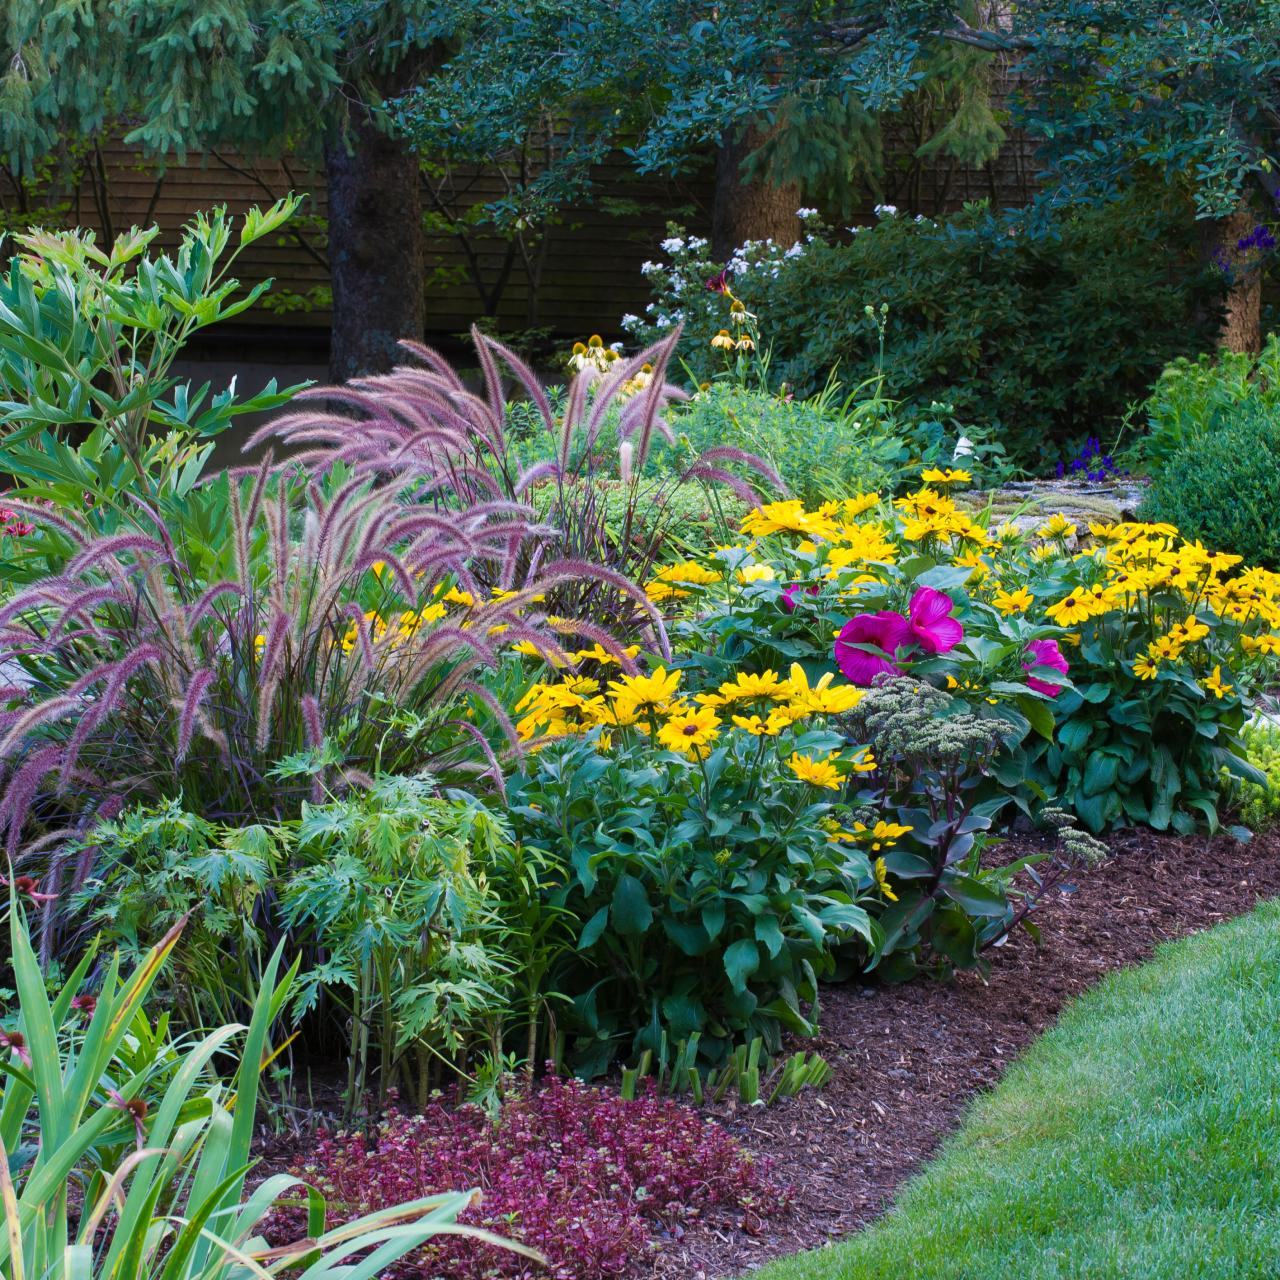 Top 5 drought tolerant plants - The Secret Garden